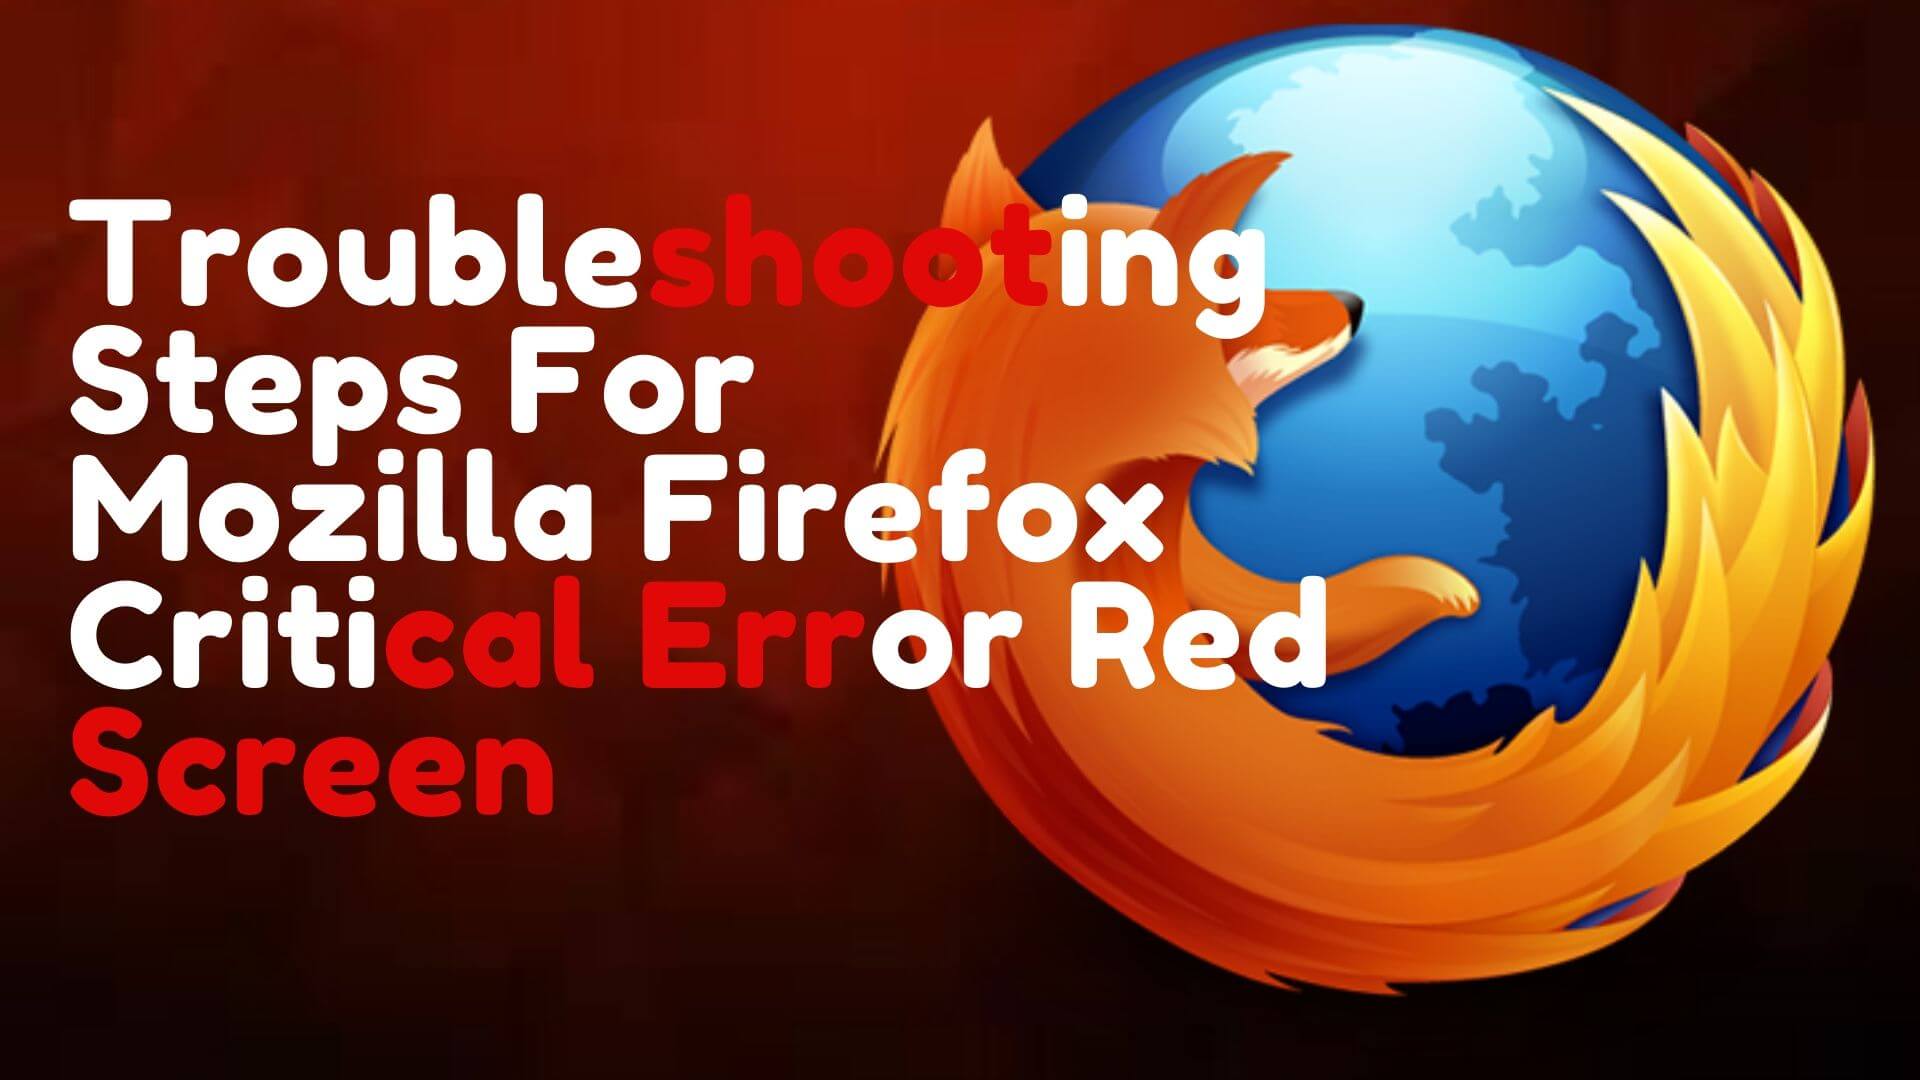 mozilla firefox critical error red screen remove